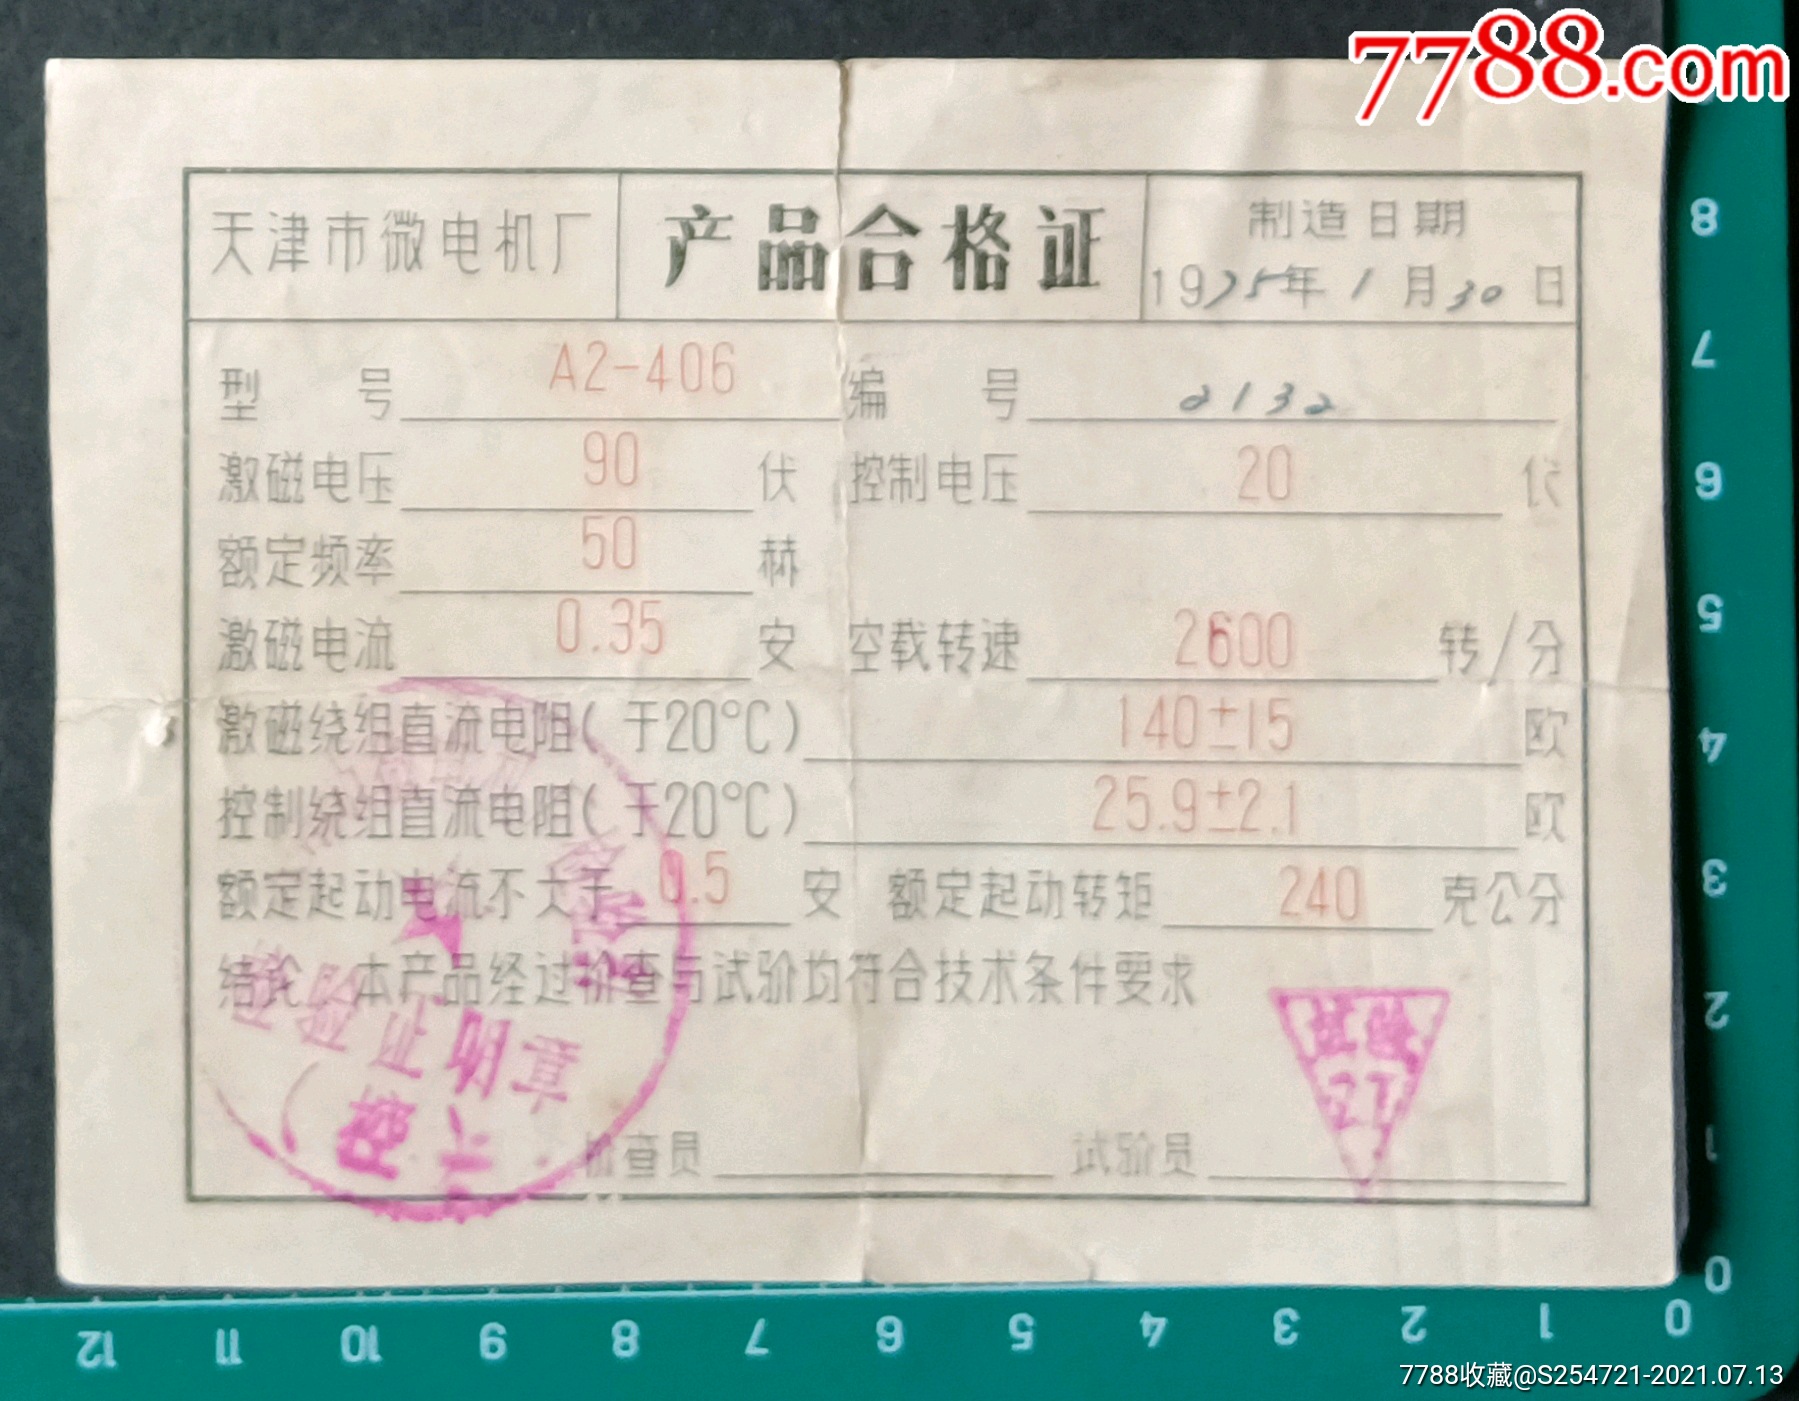 a2一406型交流伺服电机合格证,天津市微电机厂